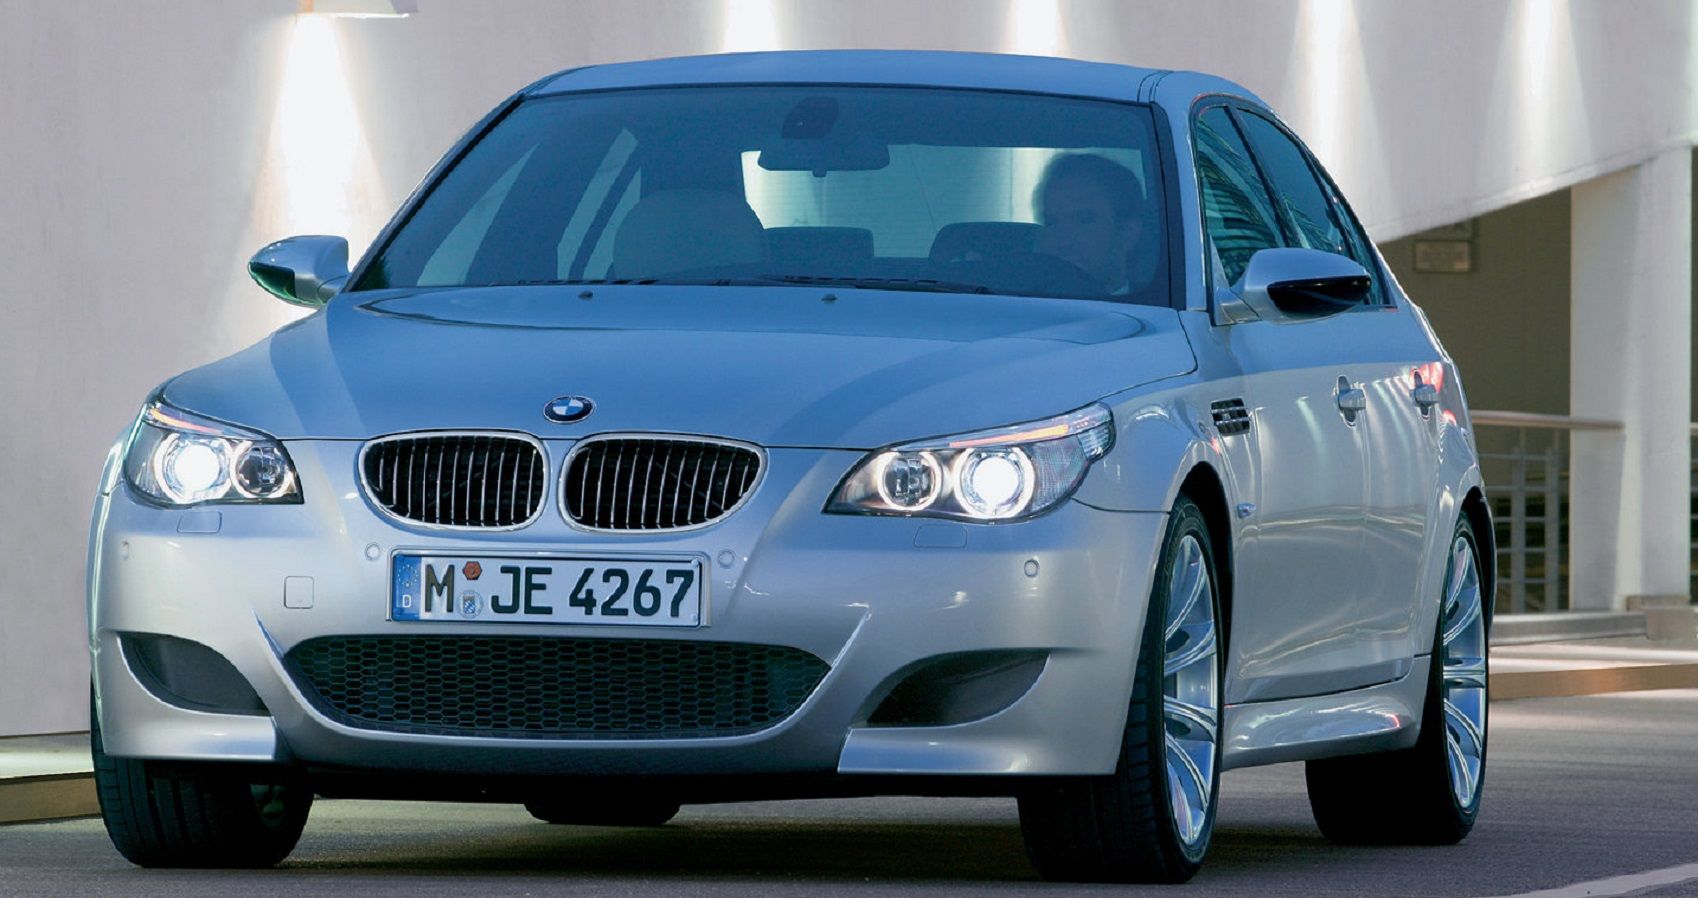 2005 BMW M5 E60 - Front